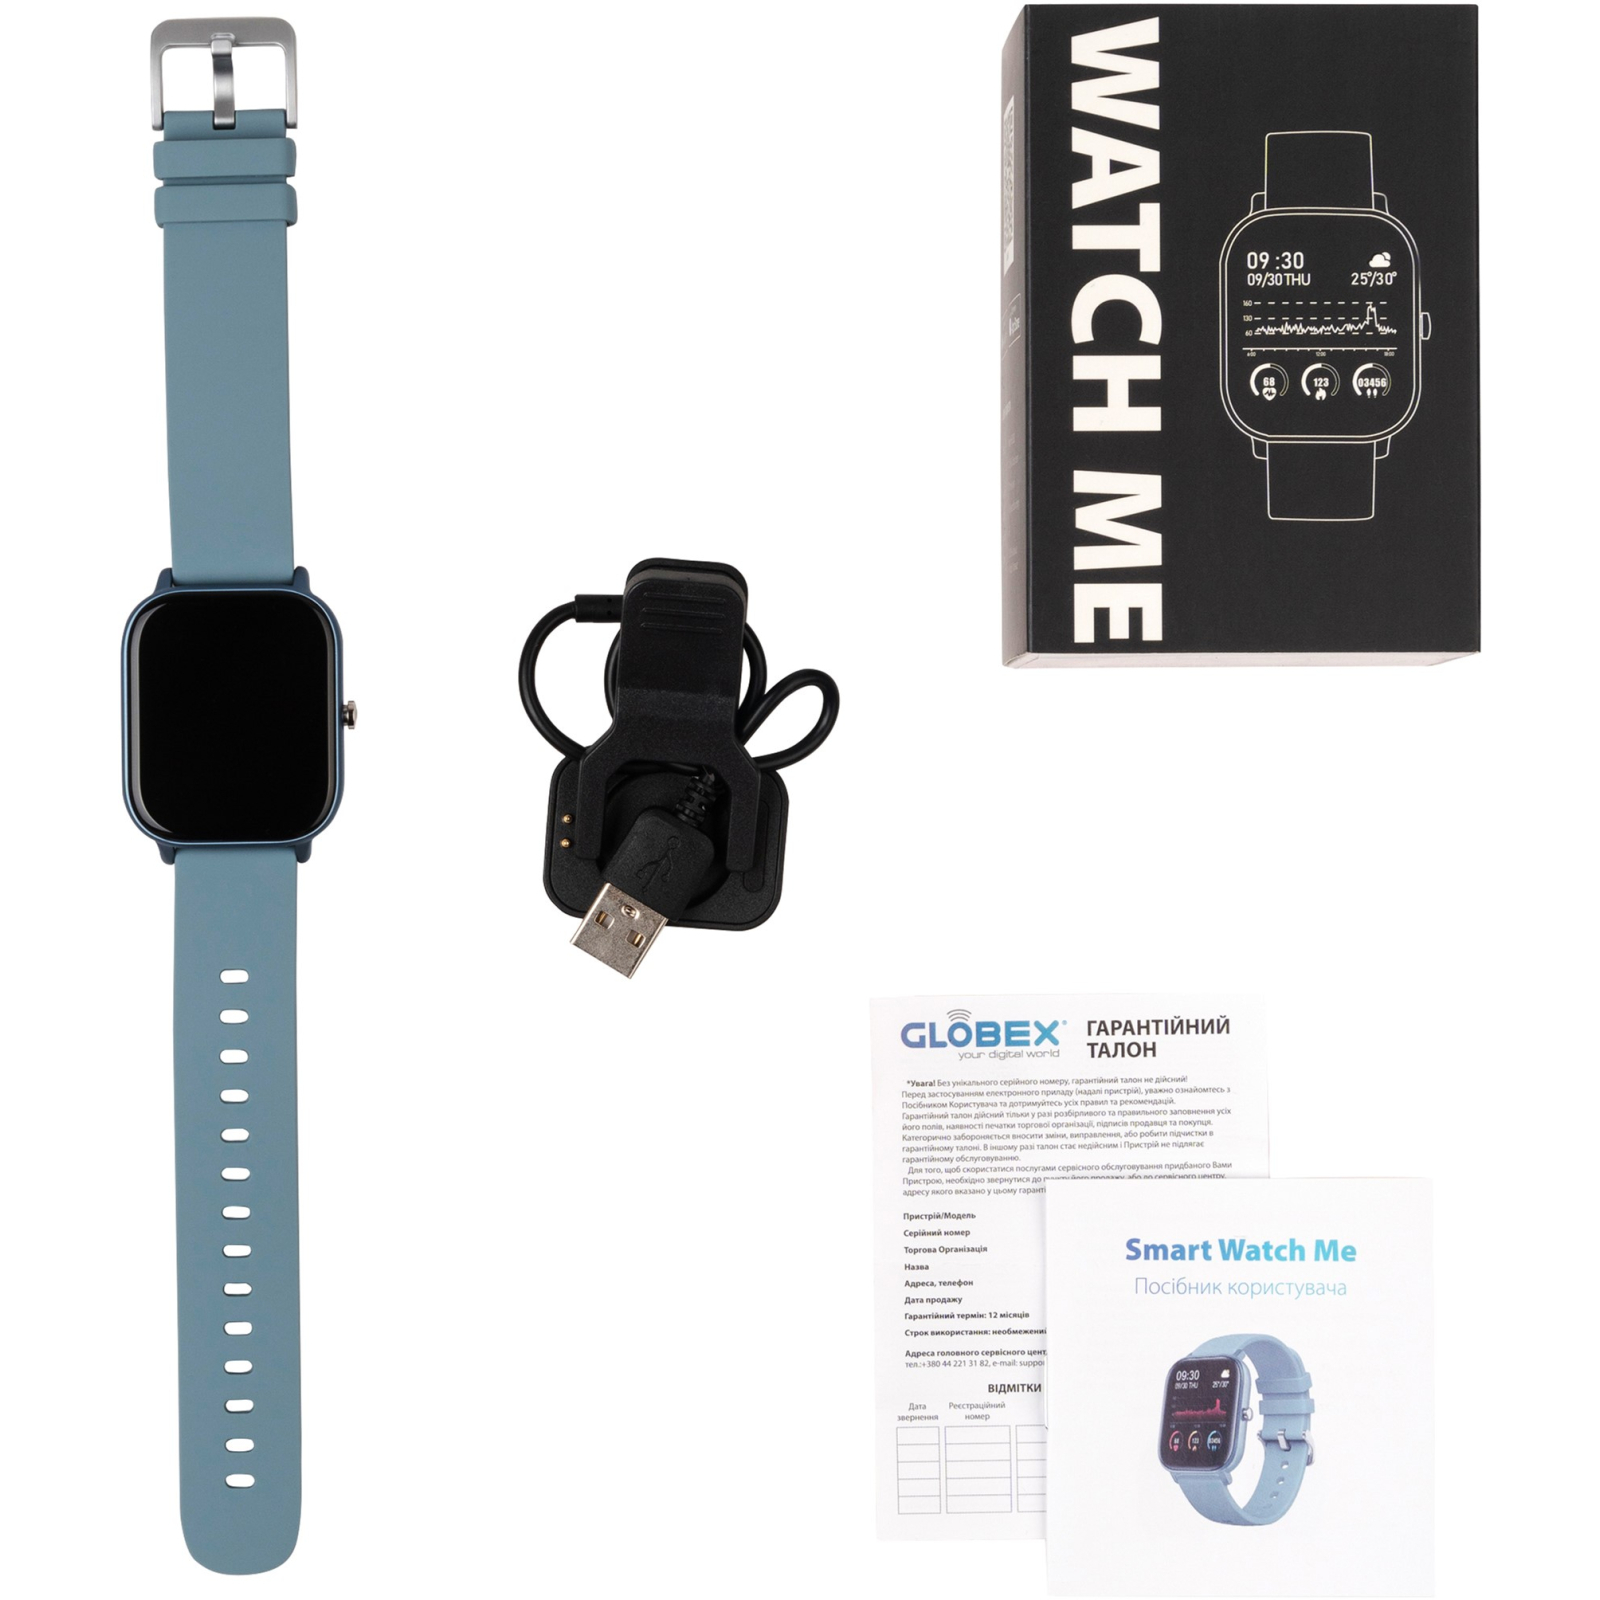 Смарт-часы Globex Smart Watch Me (Gold Rose) изображение 6